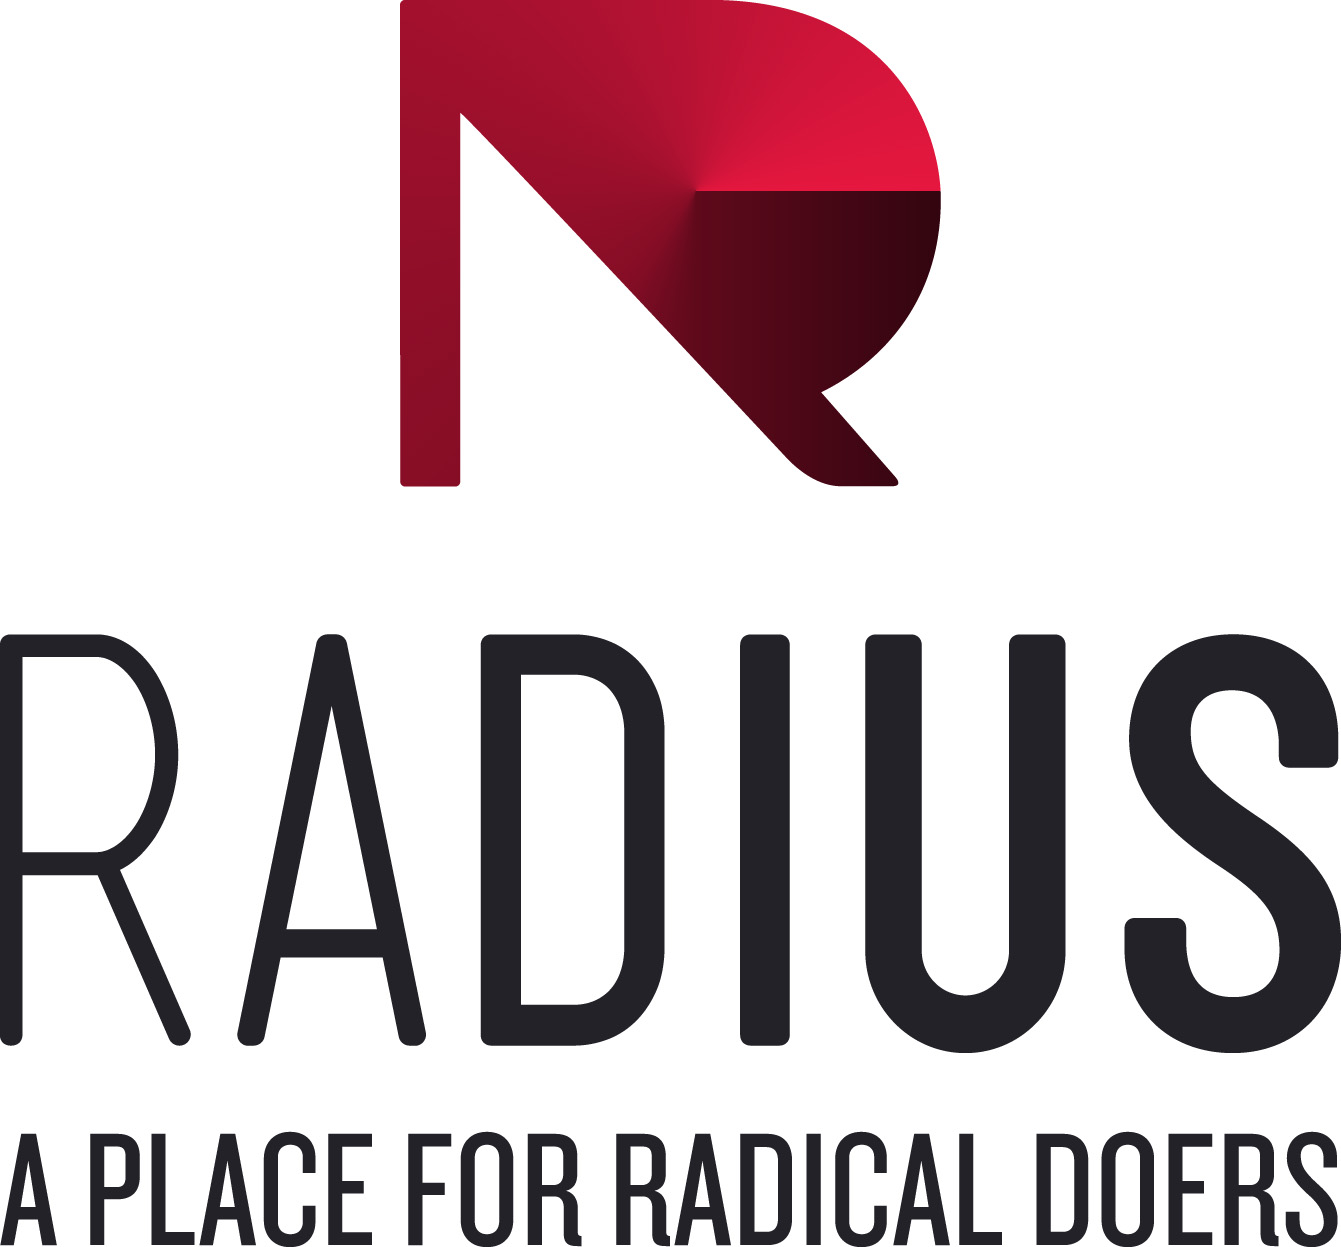 RadiusSFU